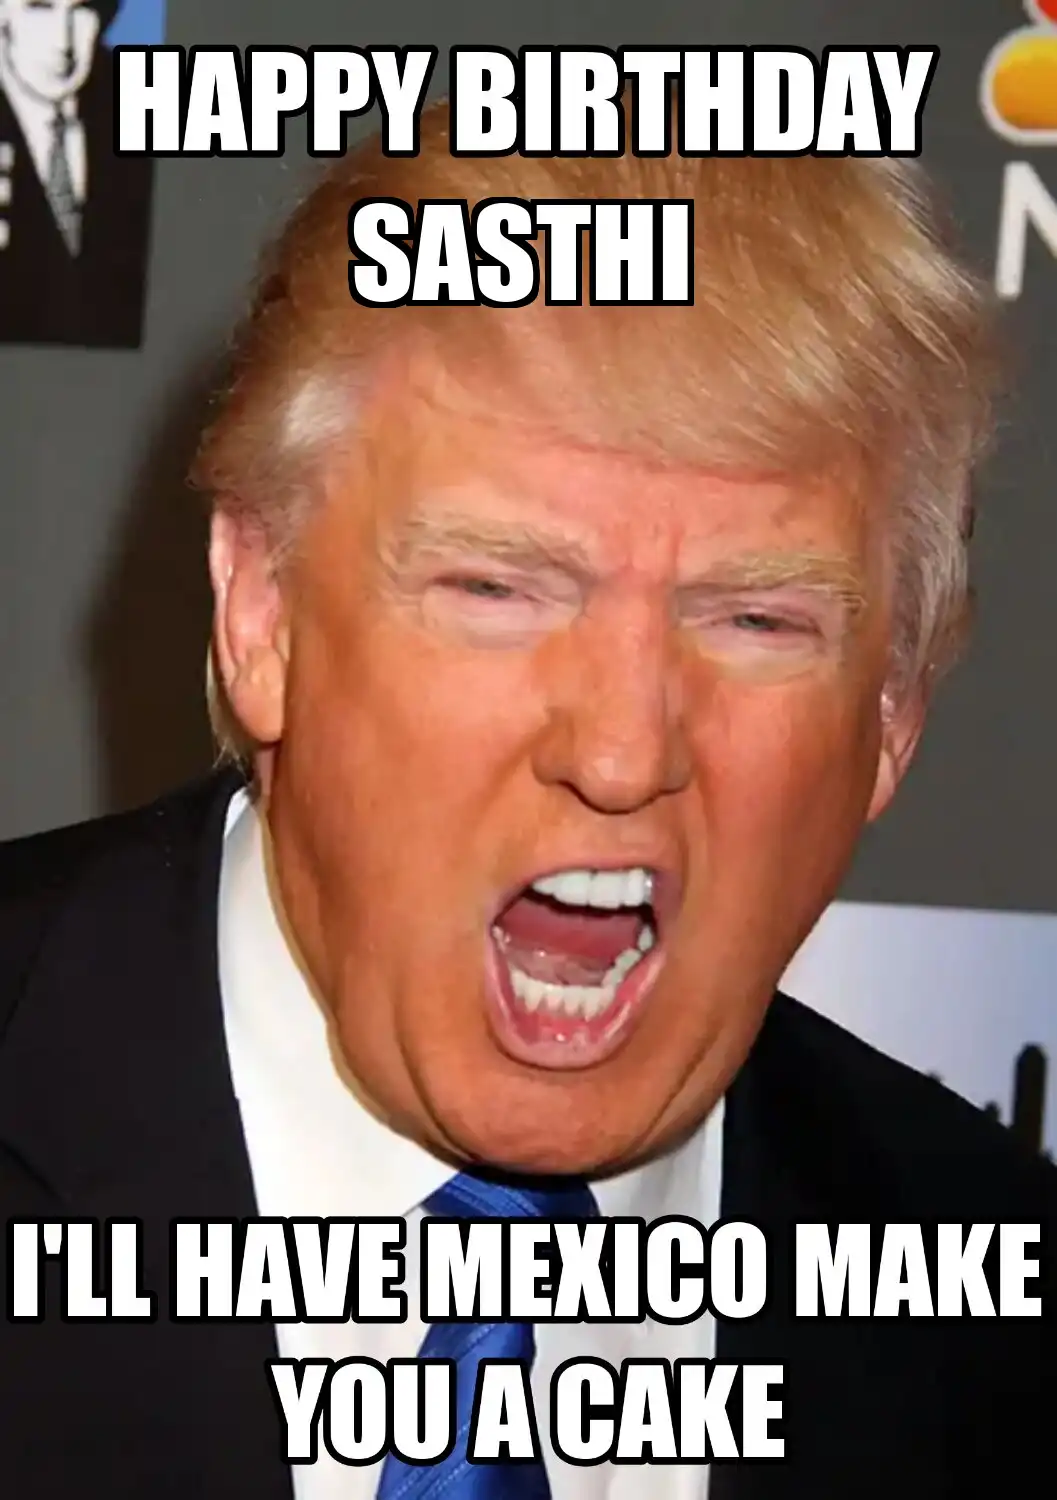 Happy Birthday Sasthi Mexico Make You A Cake Meme